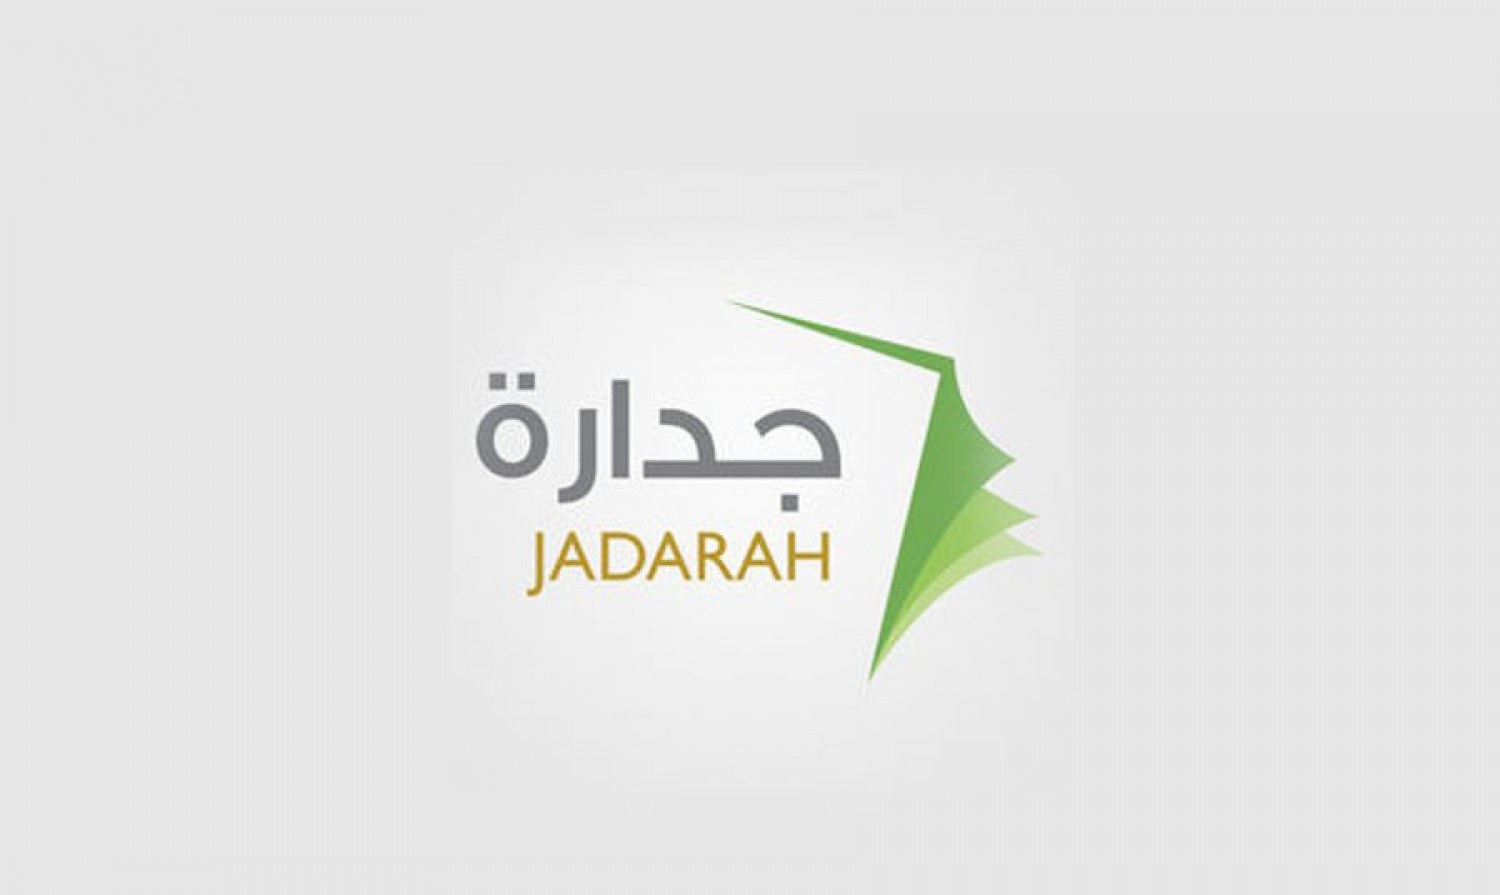 وظائف جدارة 1441 من خلال البوابة الإلكترونية Jaddara التابعة لوزارة الخدمة المدنية